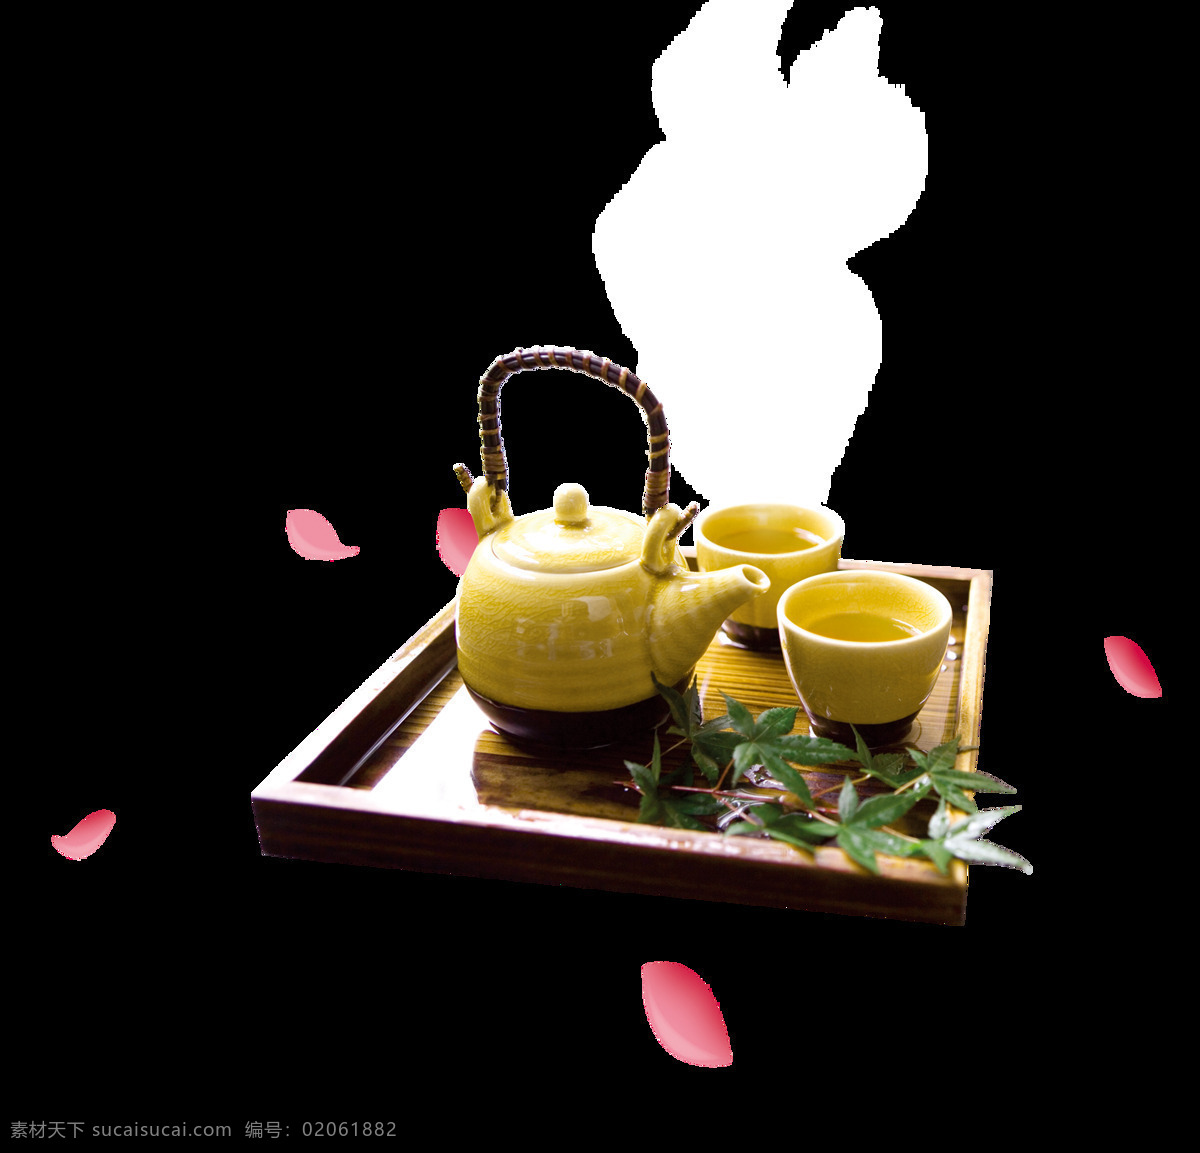 清新 风格 淡 黄色 茶几 产品 实物 产品实物 淡黄色茶杯 淡黄色茶壶 绿色叶子 木制茶盘